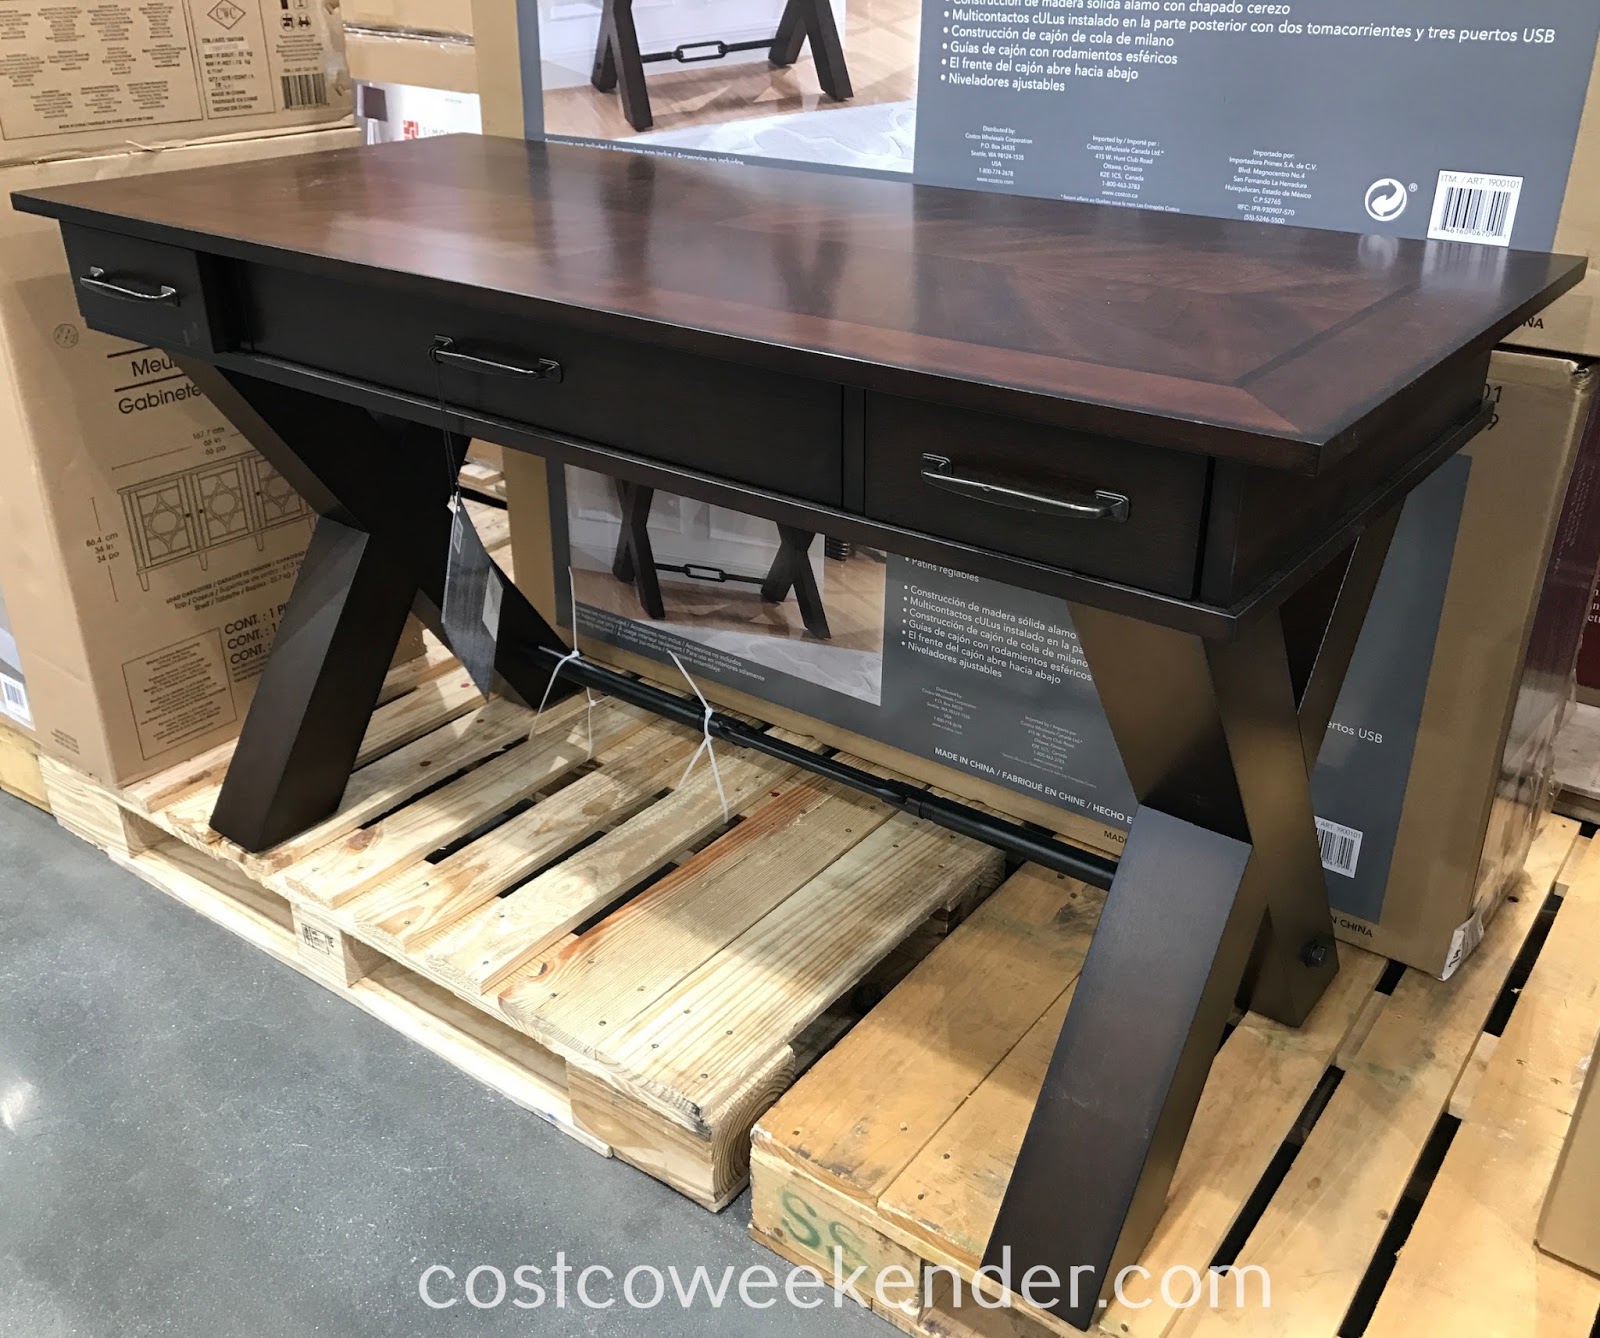 54 Writing Desk Costco Weekender